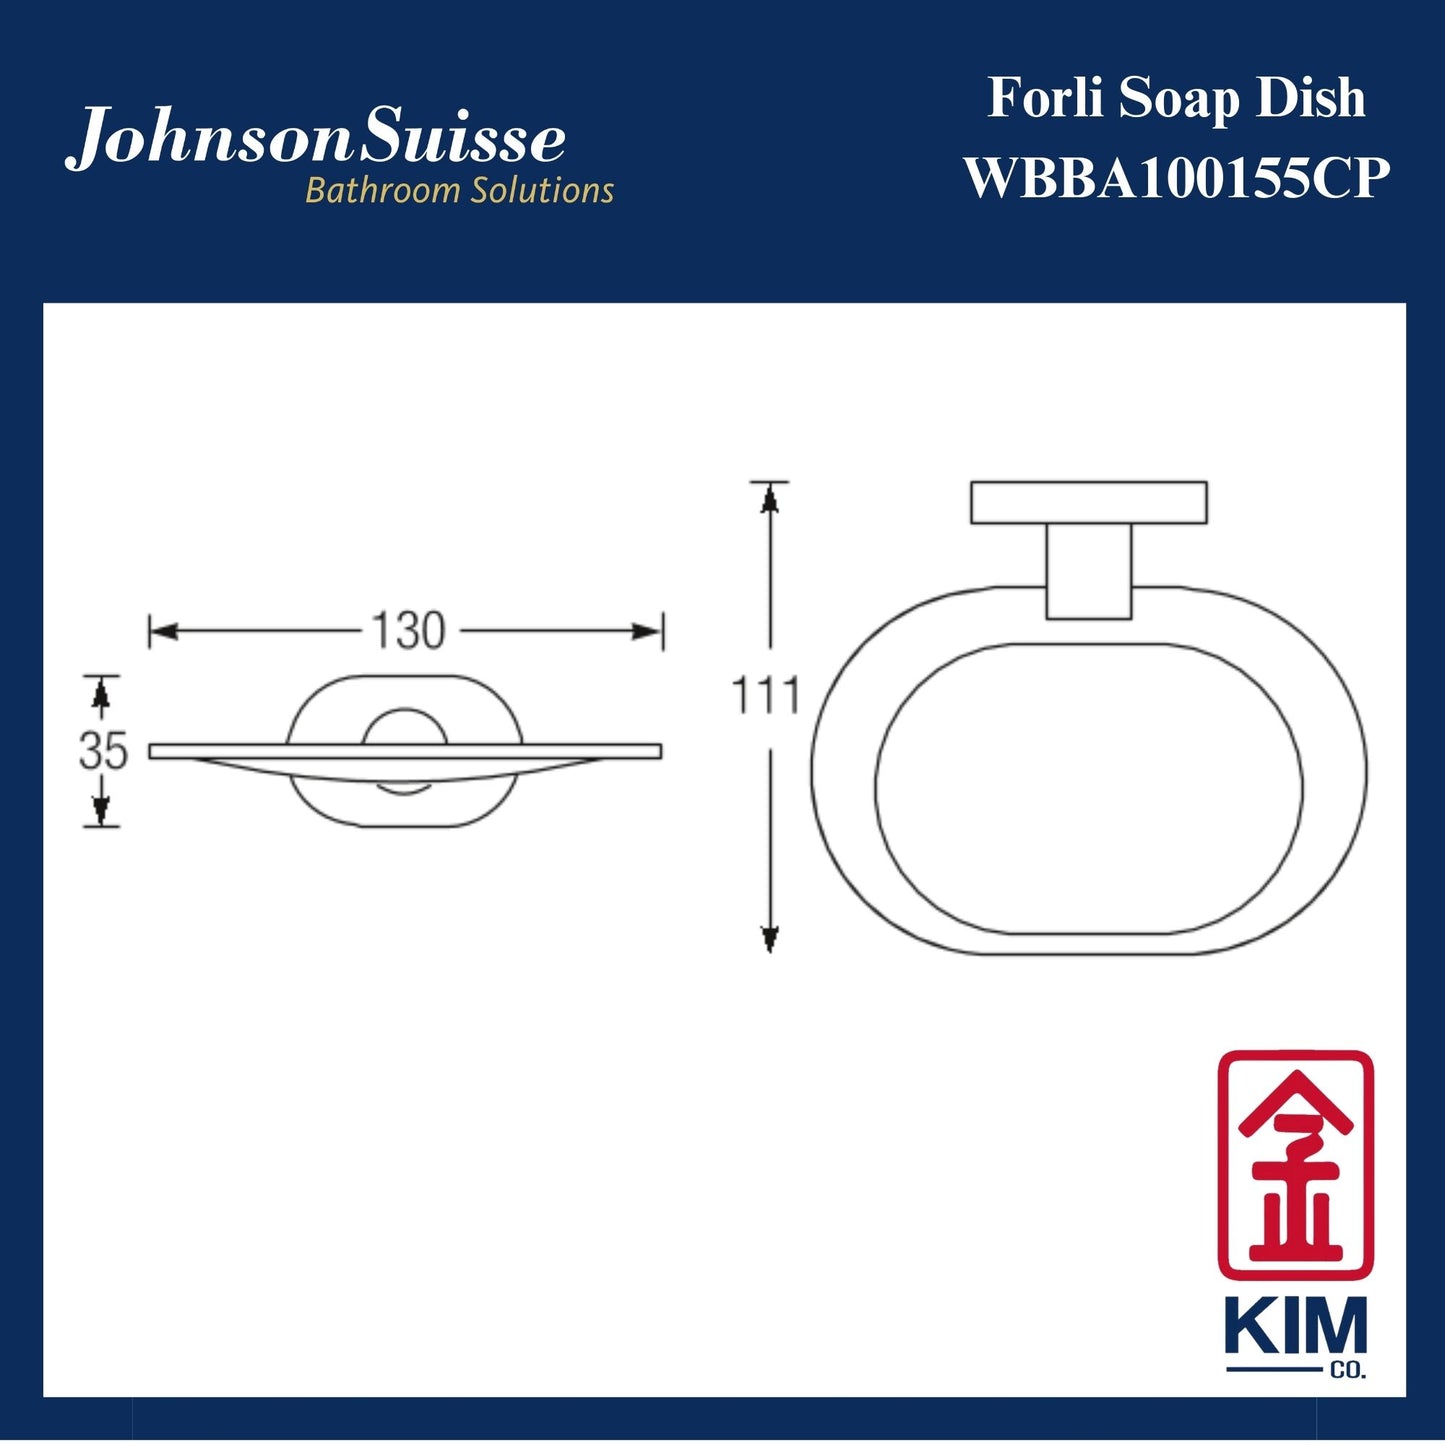 Johnson Suisse Forli Soap Dish (WBBA100155CP)